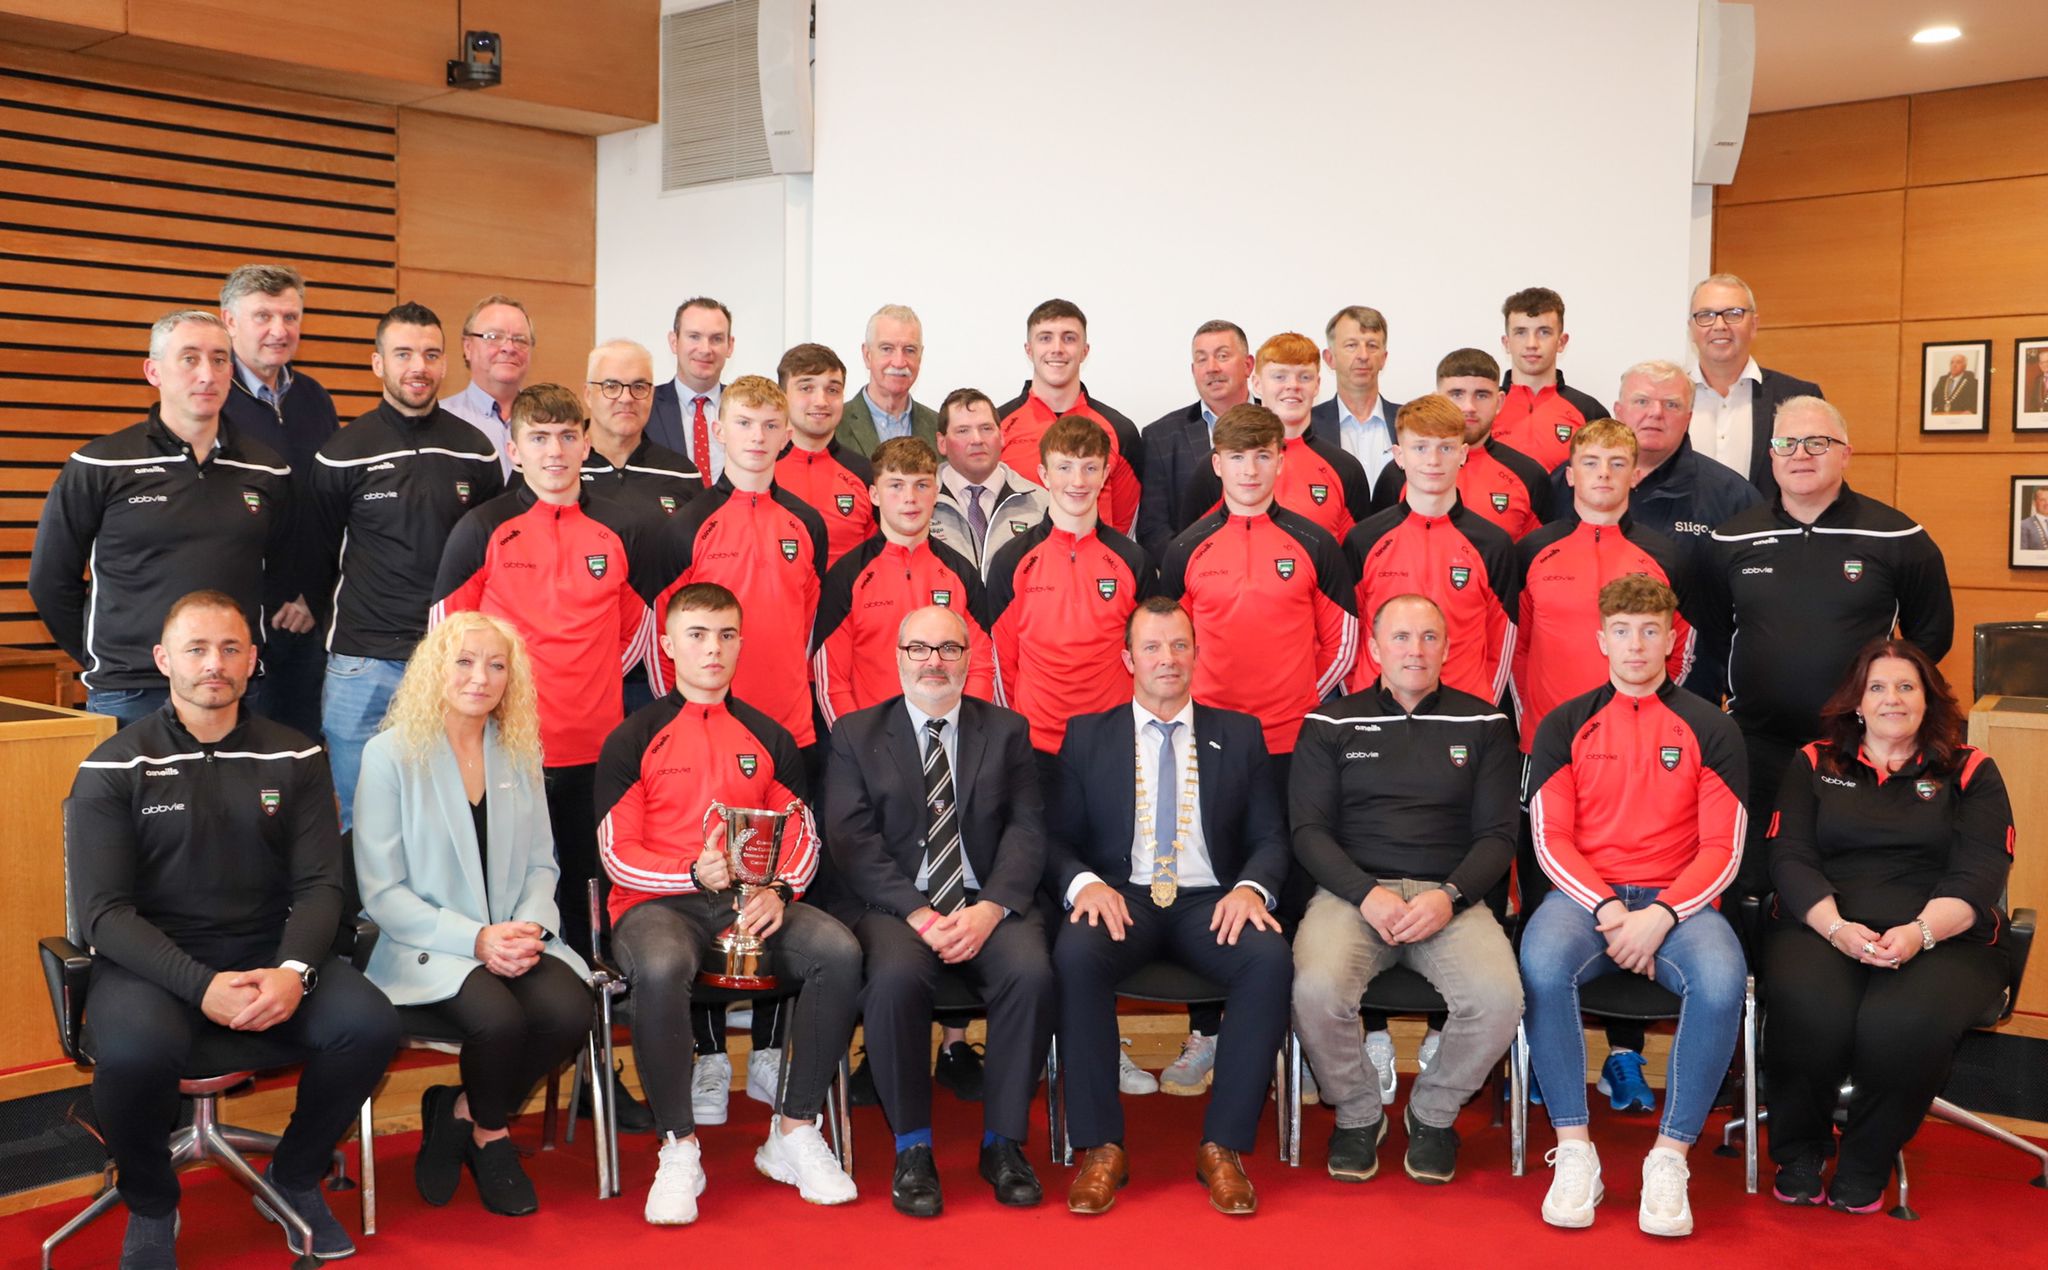 Sligo County Council honours Sligo U20 footballers with civic reception